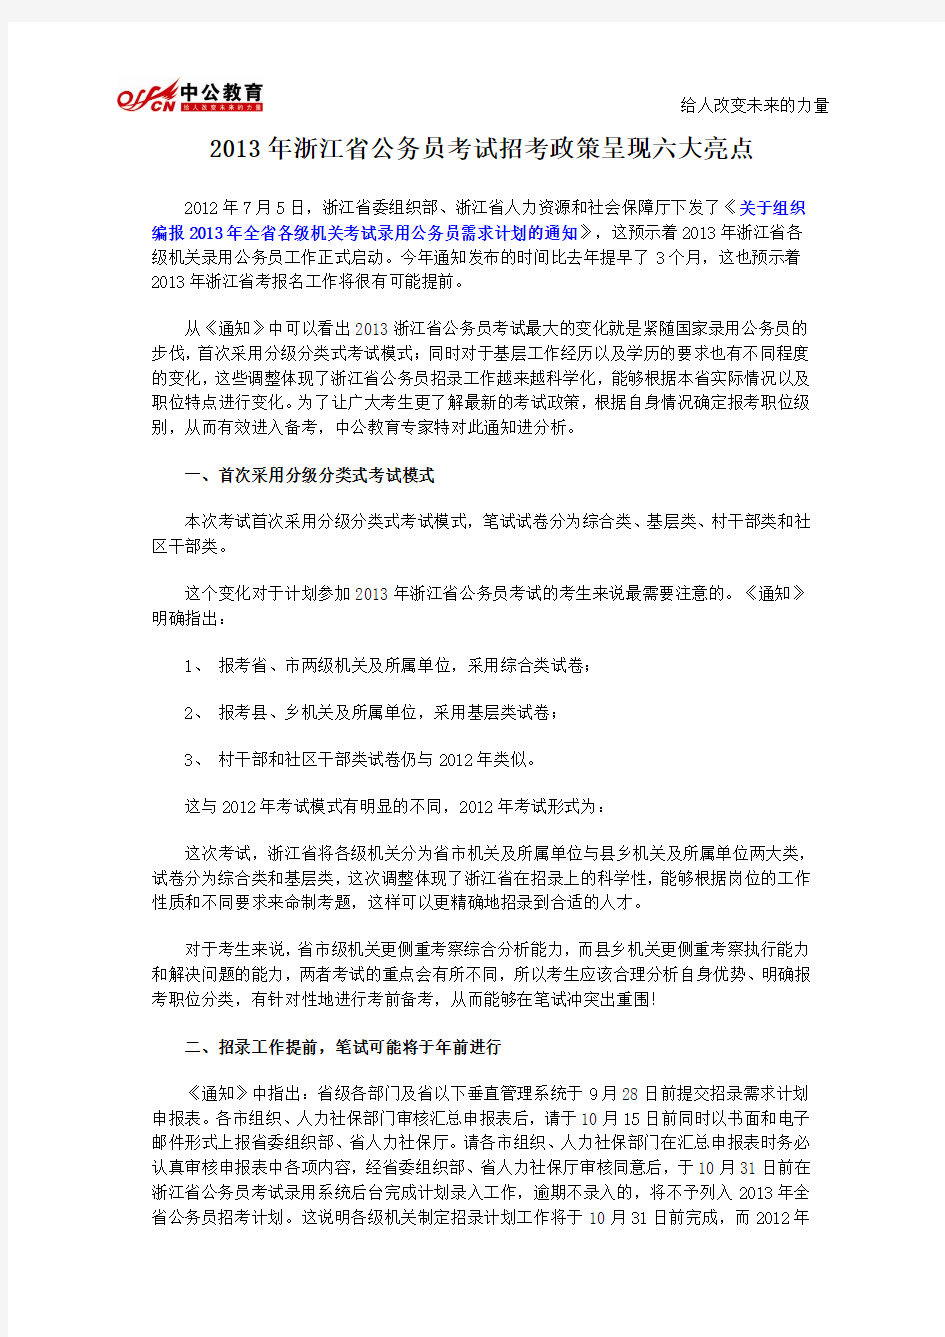 2013年浙江省公务员考试招考政策呈现六大亮点